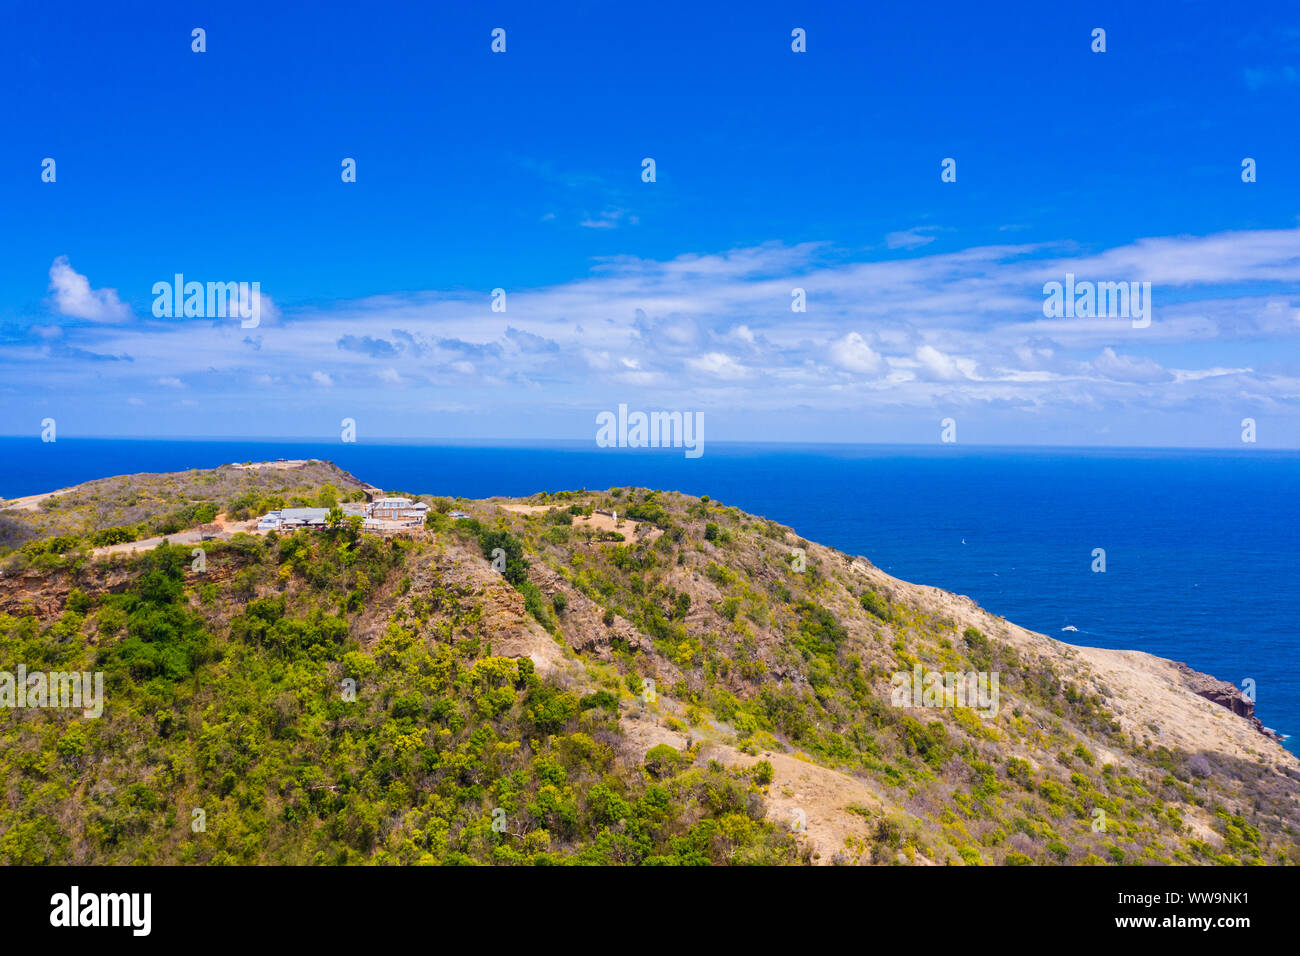 Vista aérea de Shirley Heights belvedere en la colina con vistas al Mar Caribe, Antigua, Antigua y Barbuda, Caribe, West Indies Foto de stock